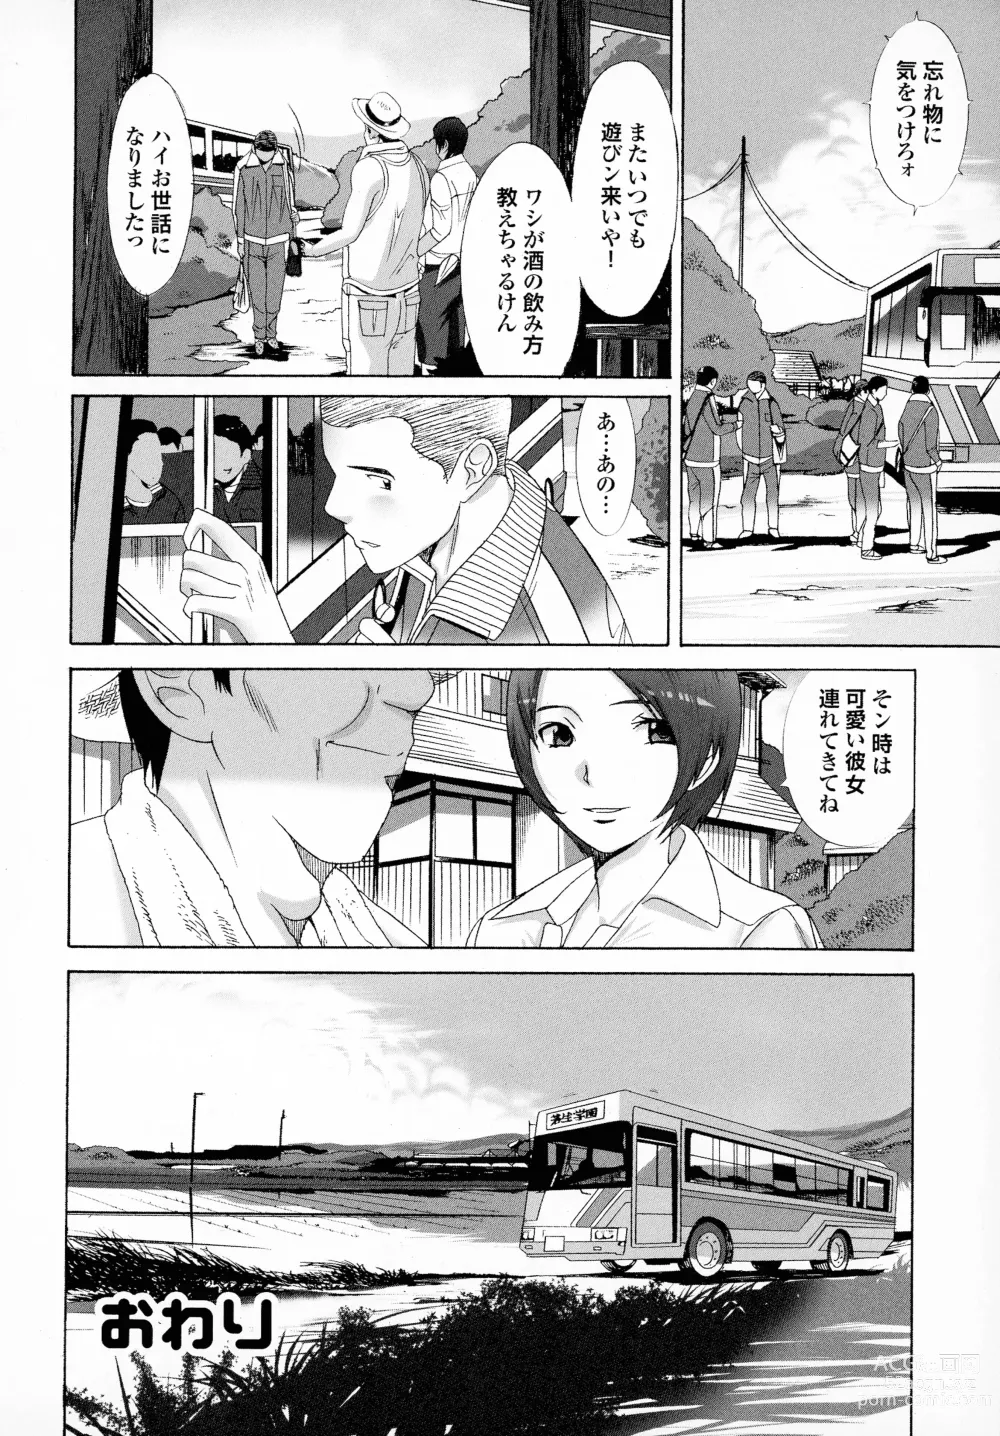 Page 174 of manga Okaa-san mo Issho